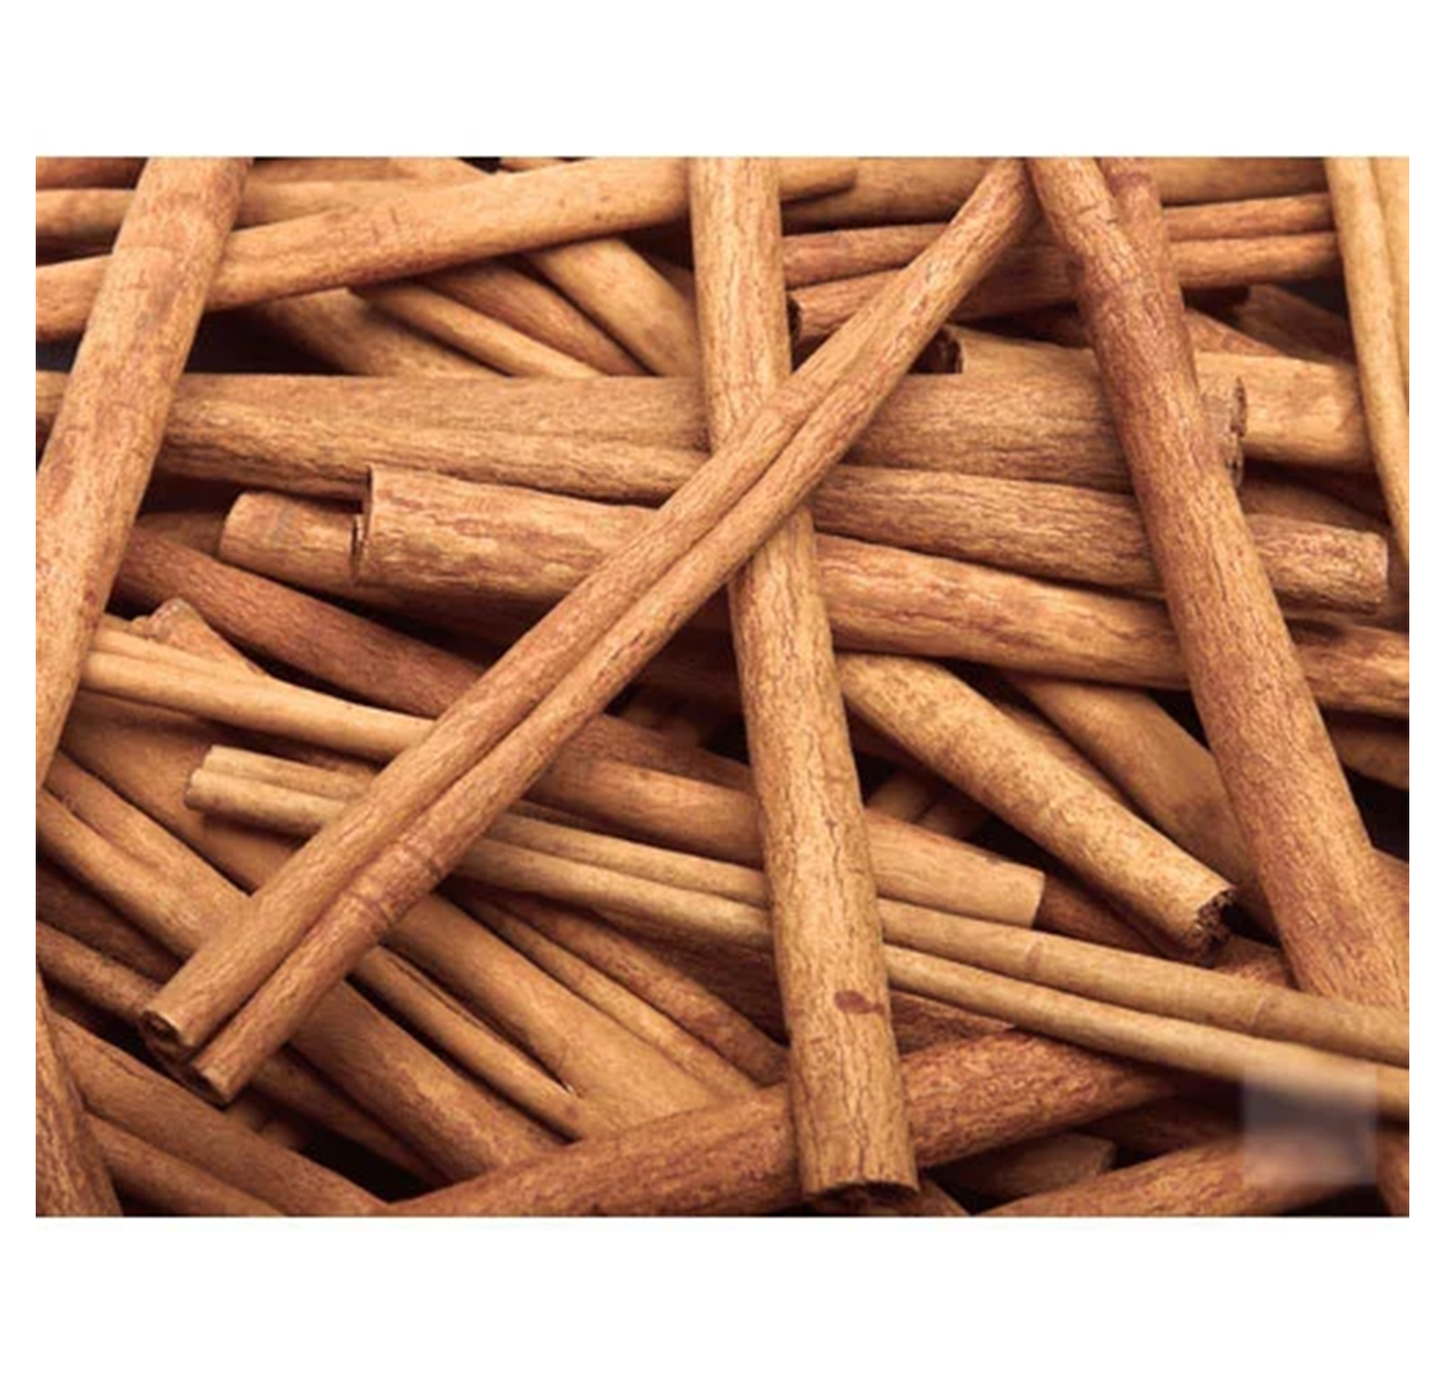 Cinnamon Sticks 12 Inches